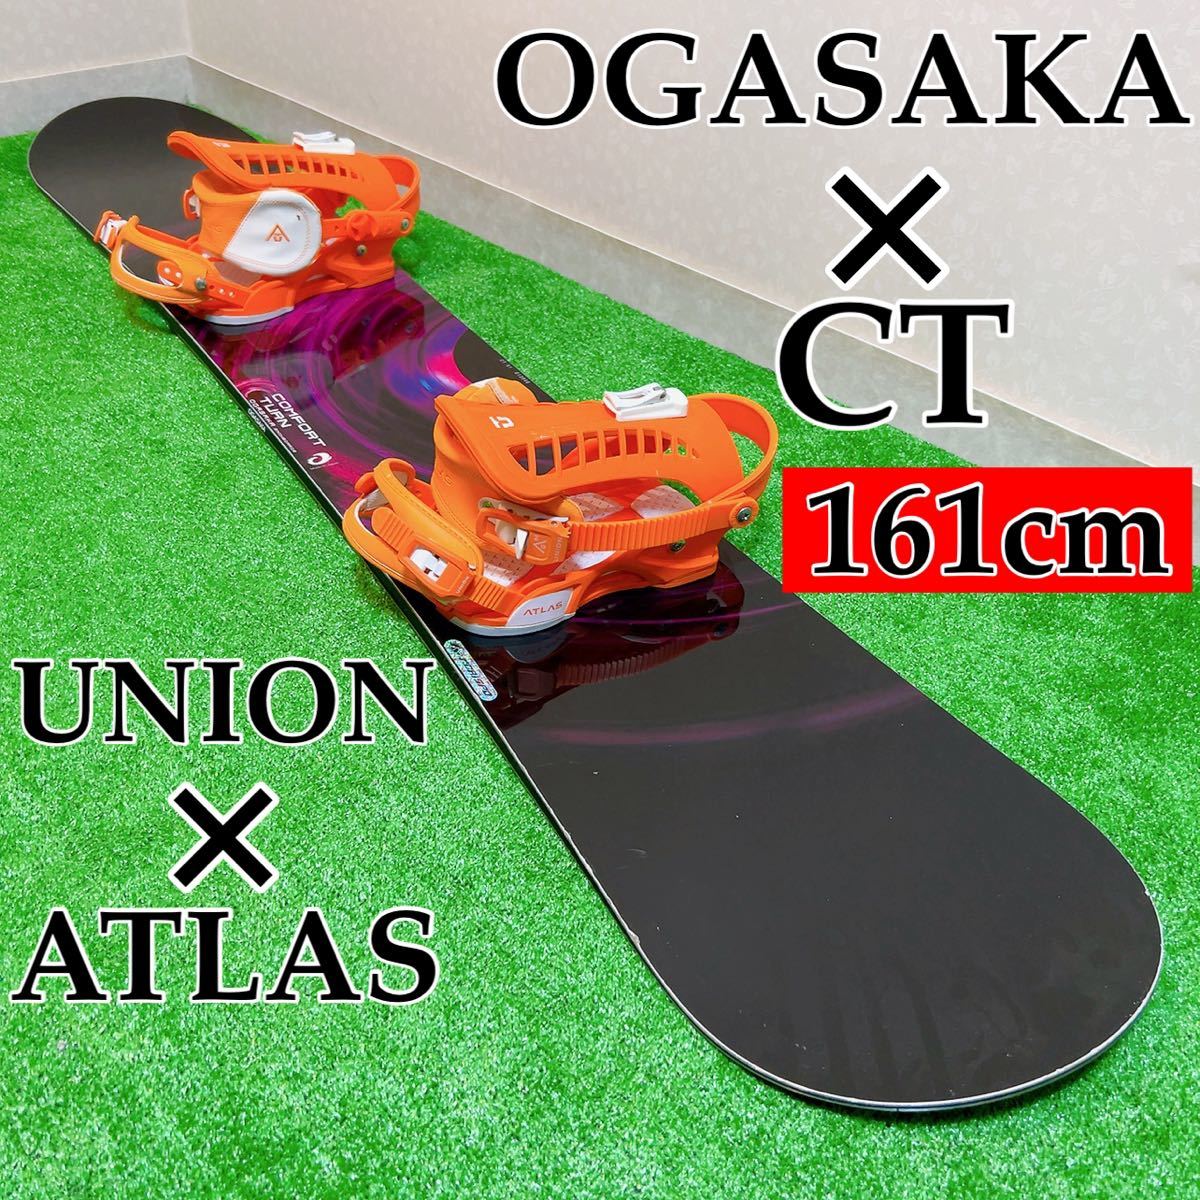 見事な スノーボード オガサカOGASAKA CT ユニオン バインセット